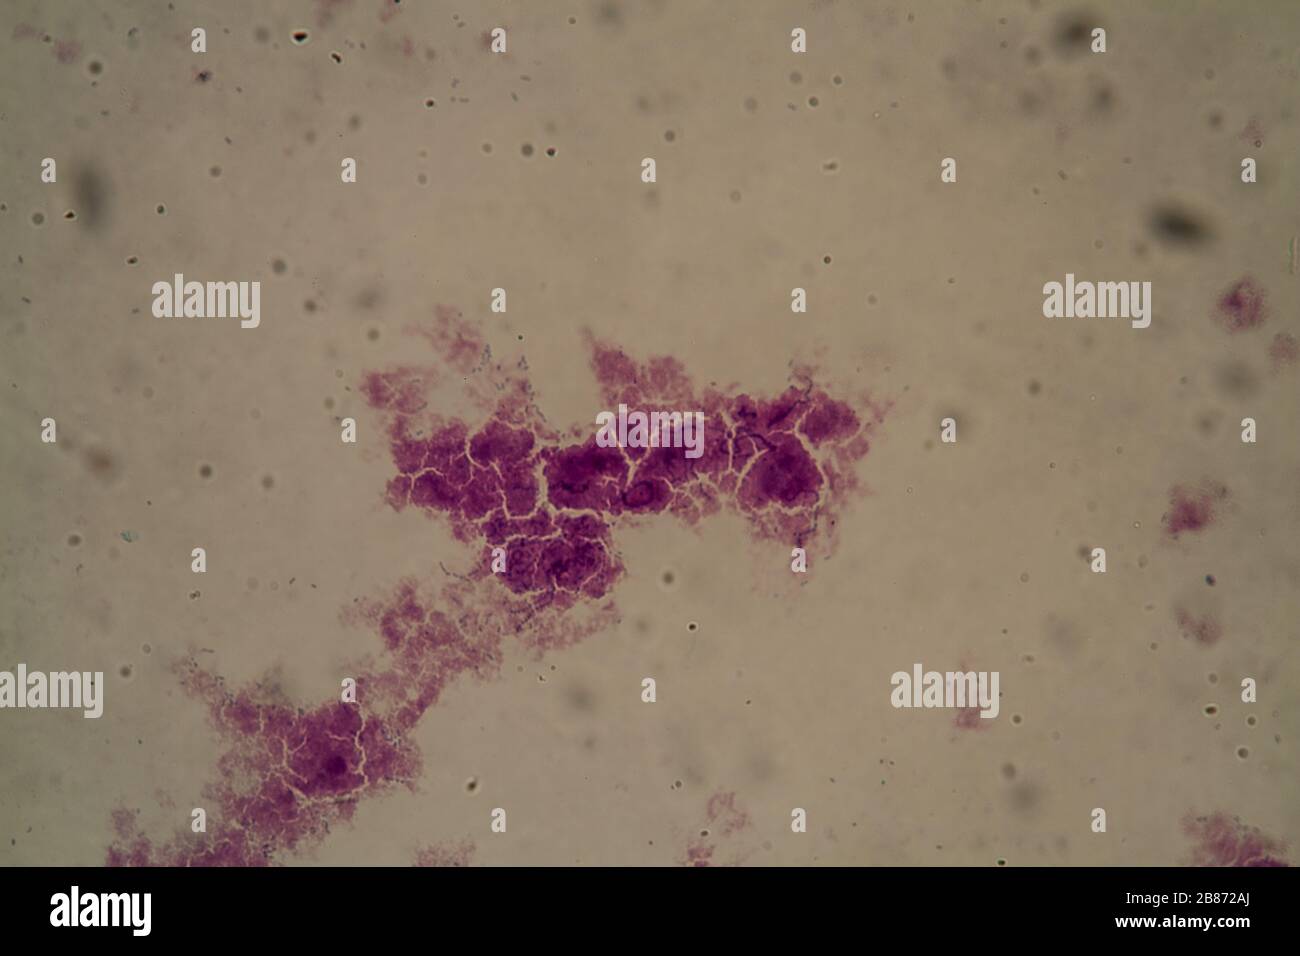 Streptococcus lactis bacteria under the microscope 400x Stock Photo